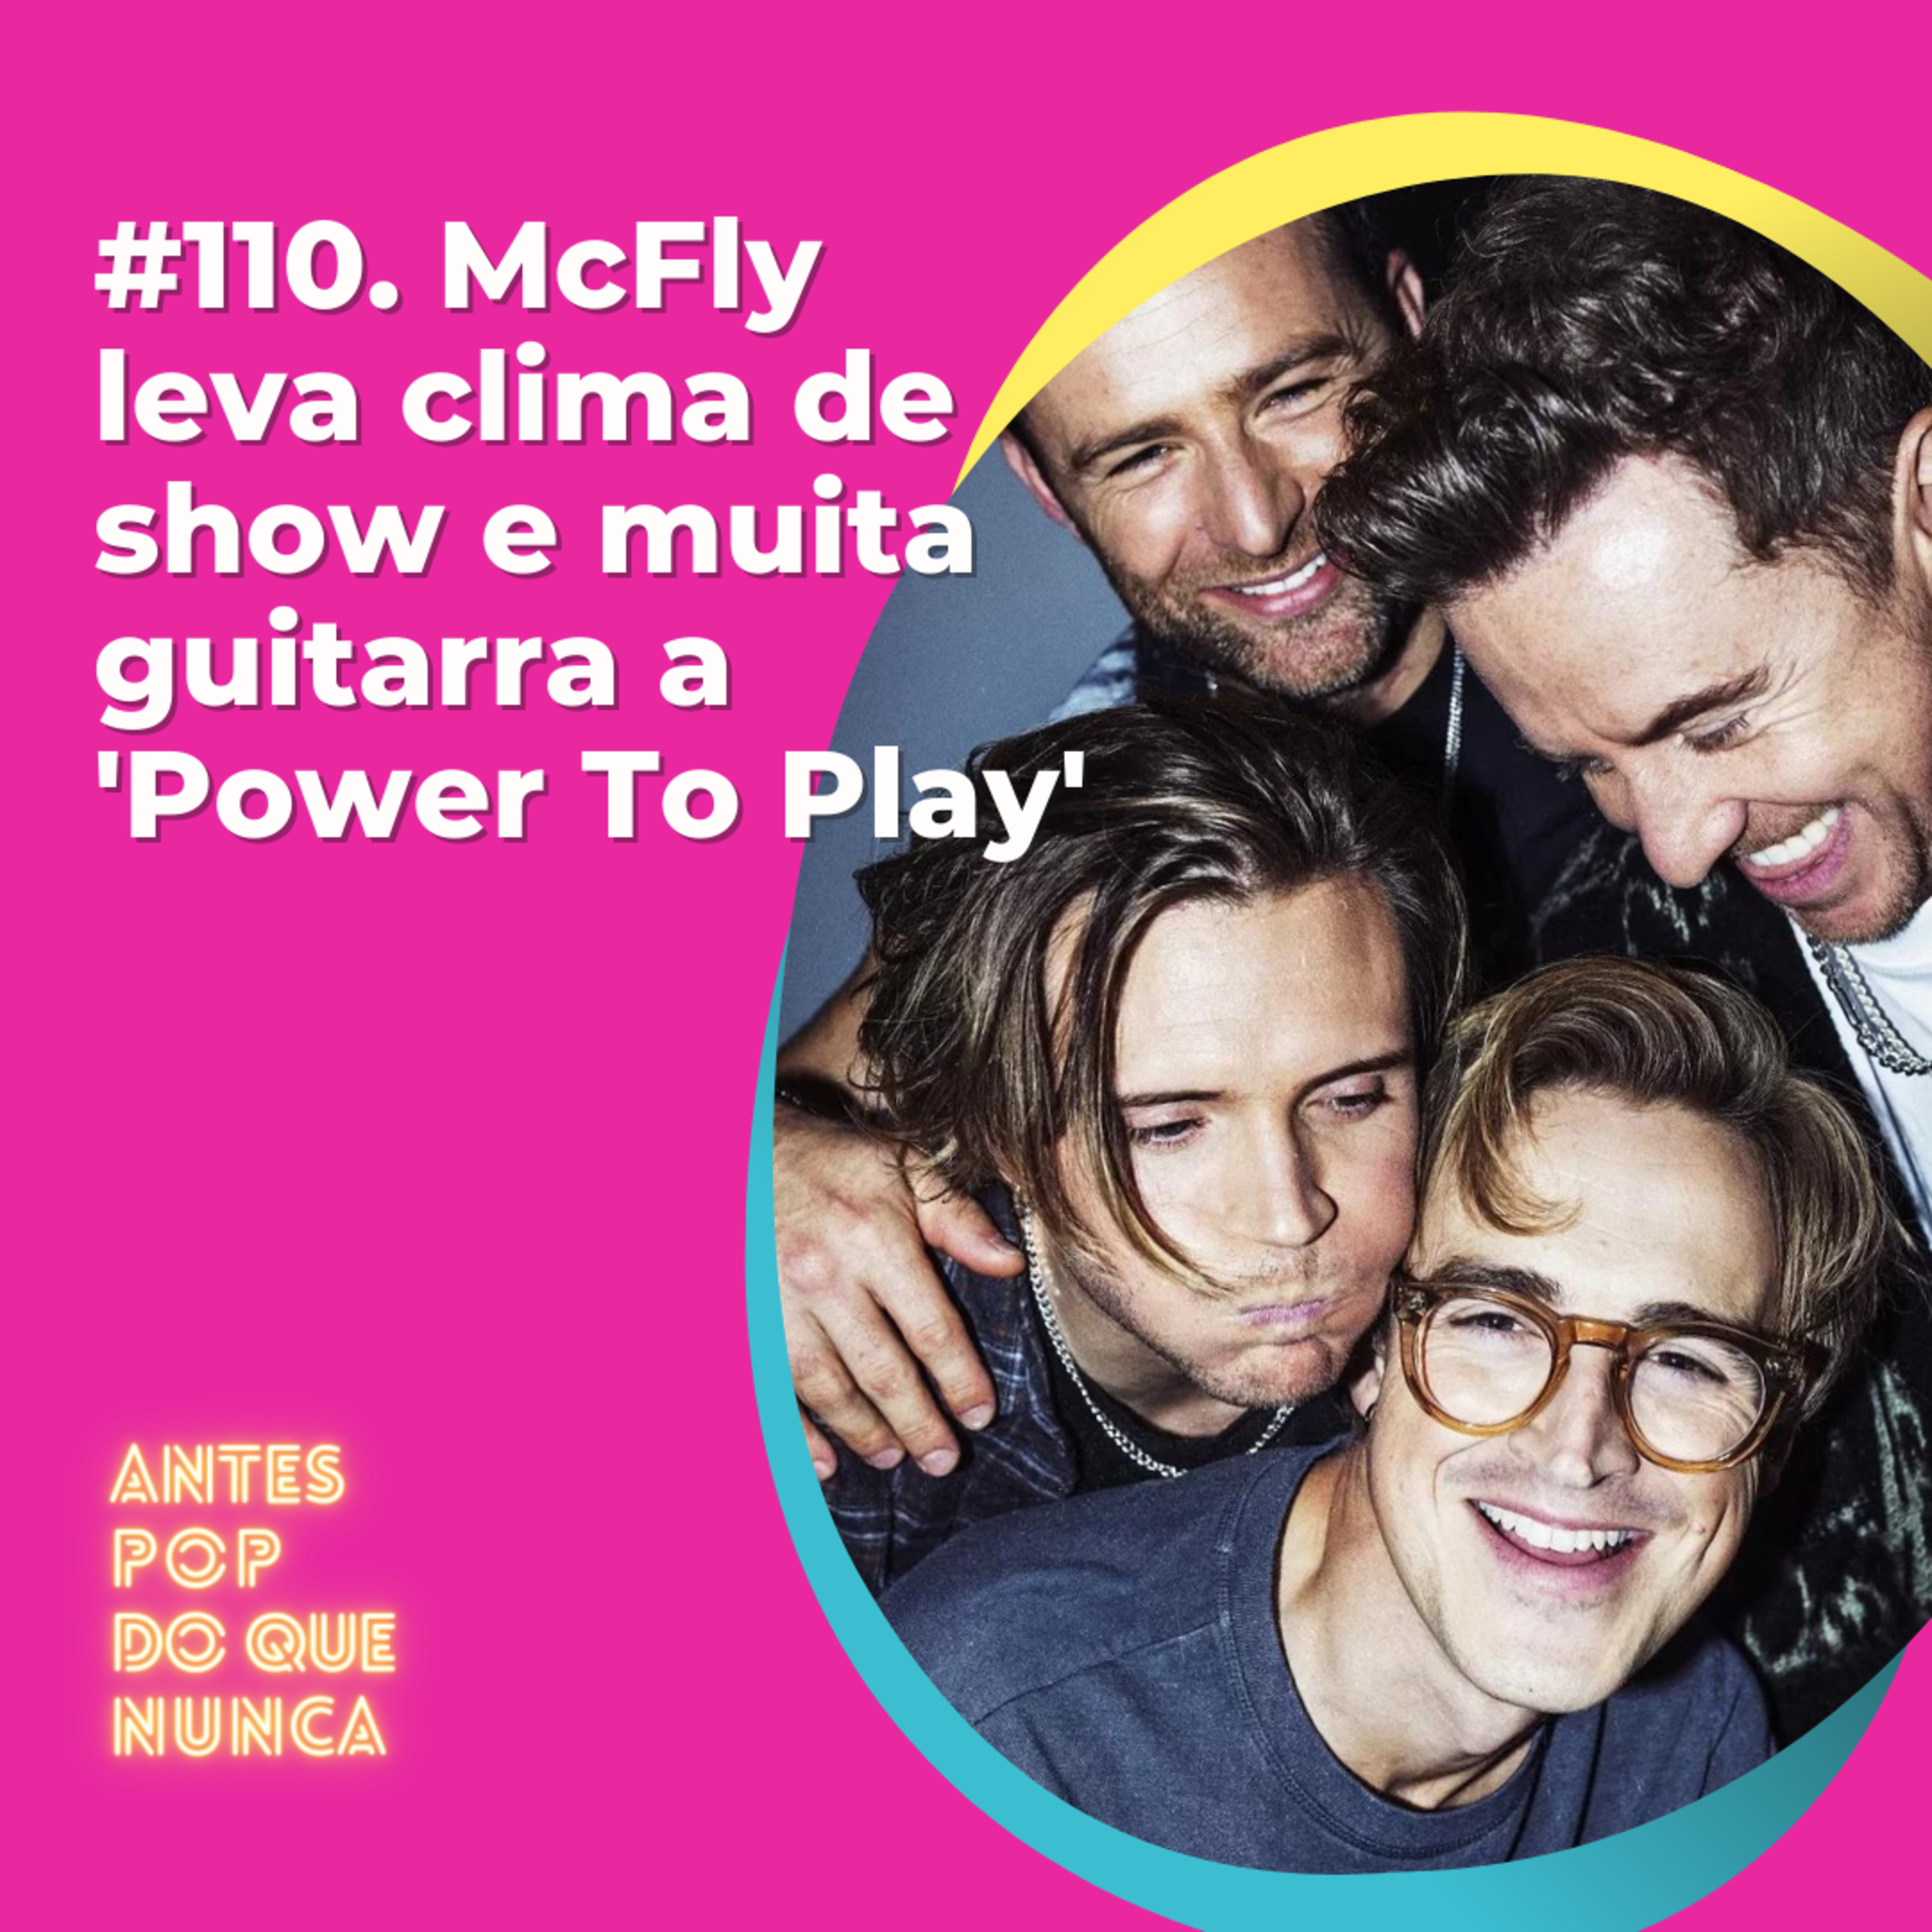 #110. McFly leva clima de show e muita guitarra a 'Power To Play'